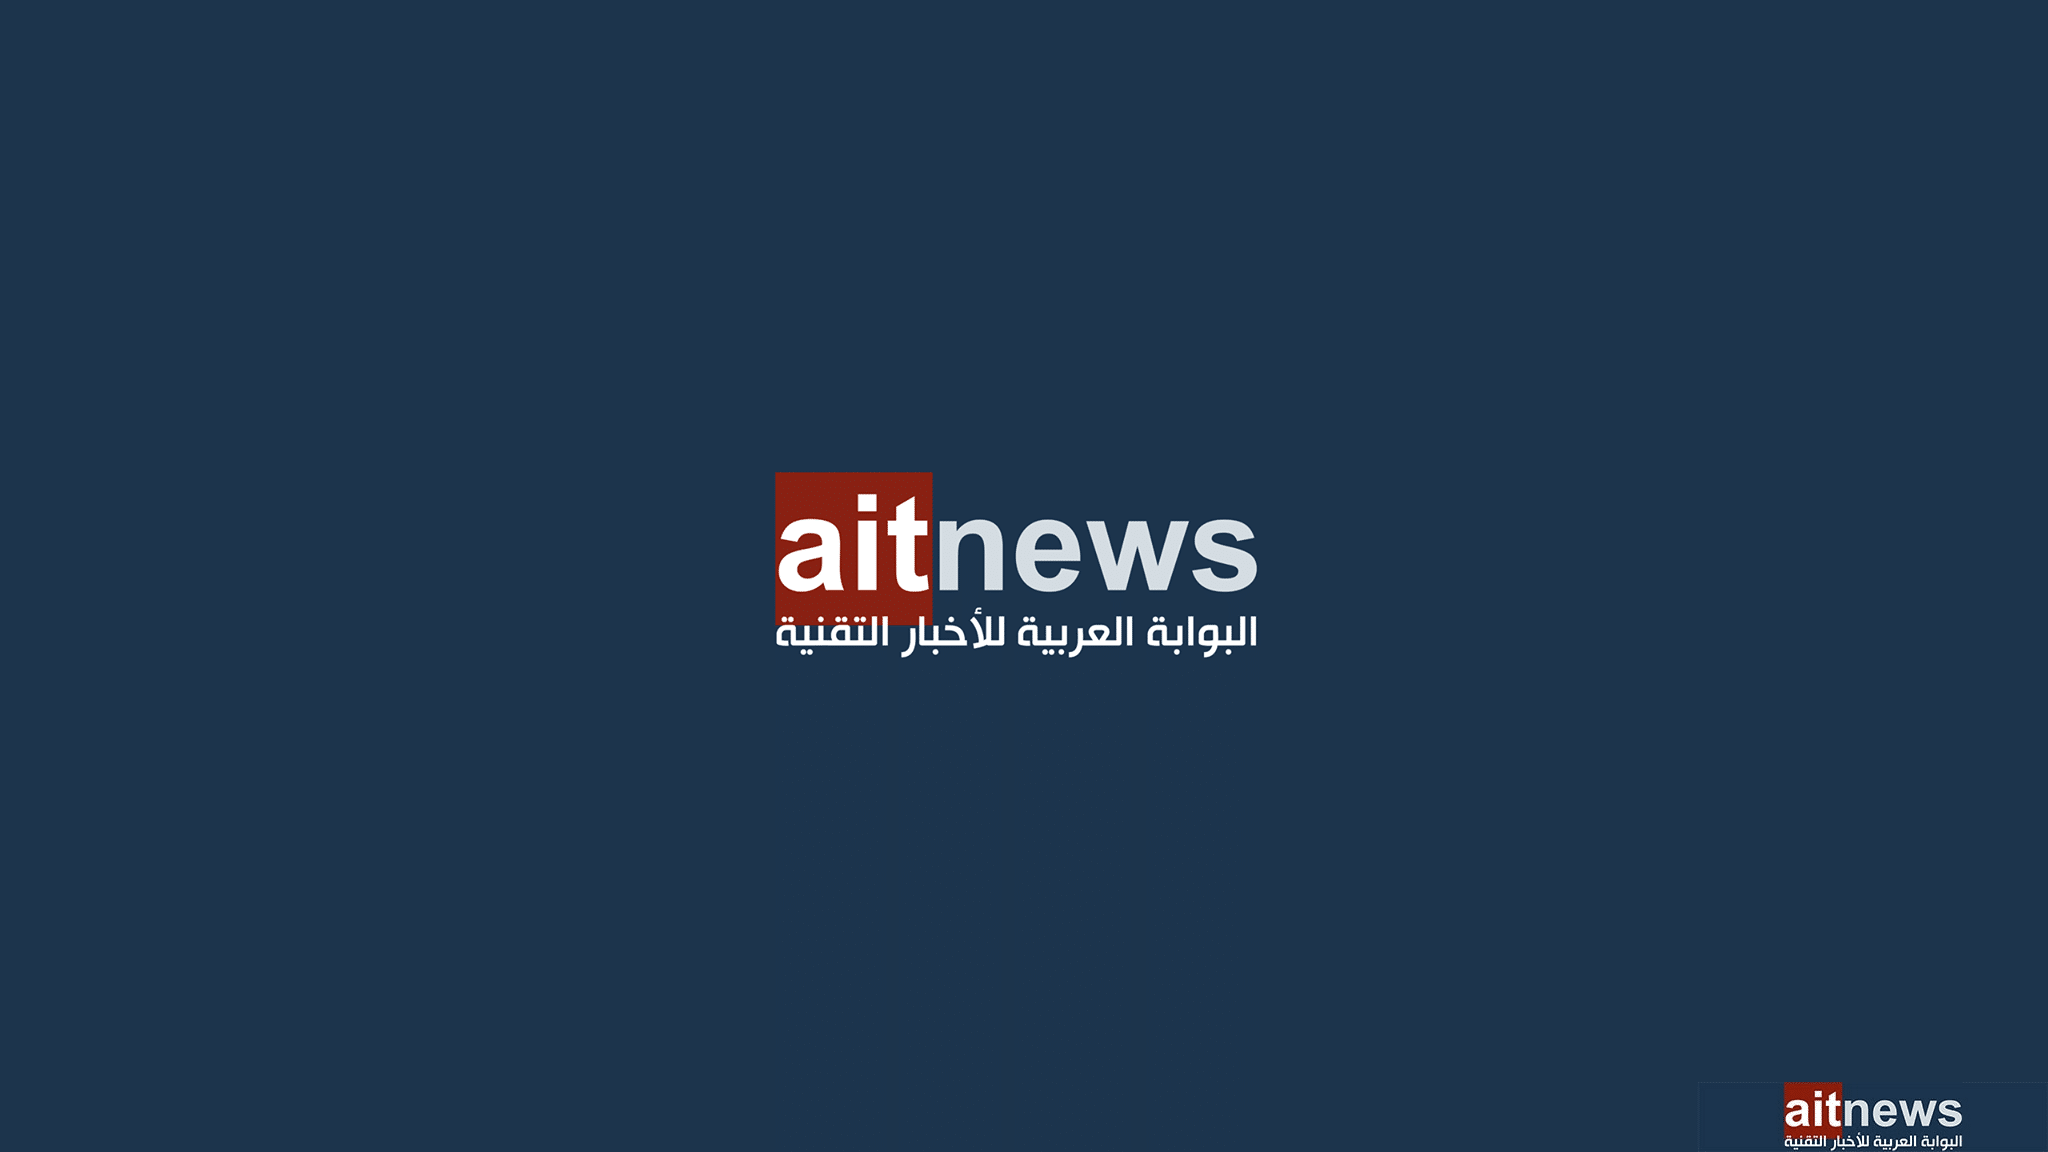 رسمياً: البوابة العربية للأخبار التقنية "الشريك الإعلامي التقني العربي الرسمي" لجيتكس جلوبال 2023